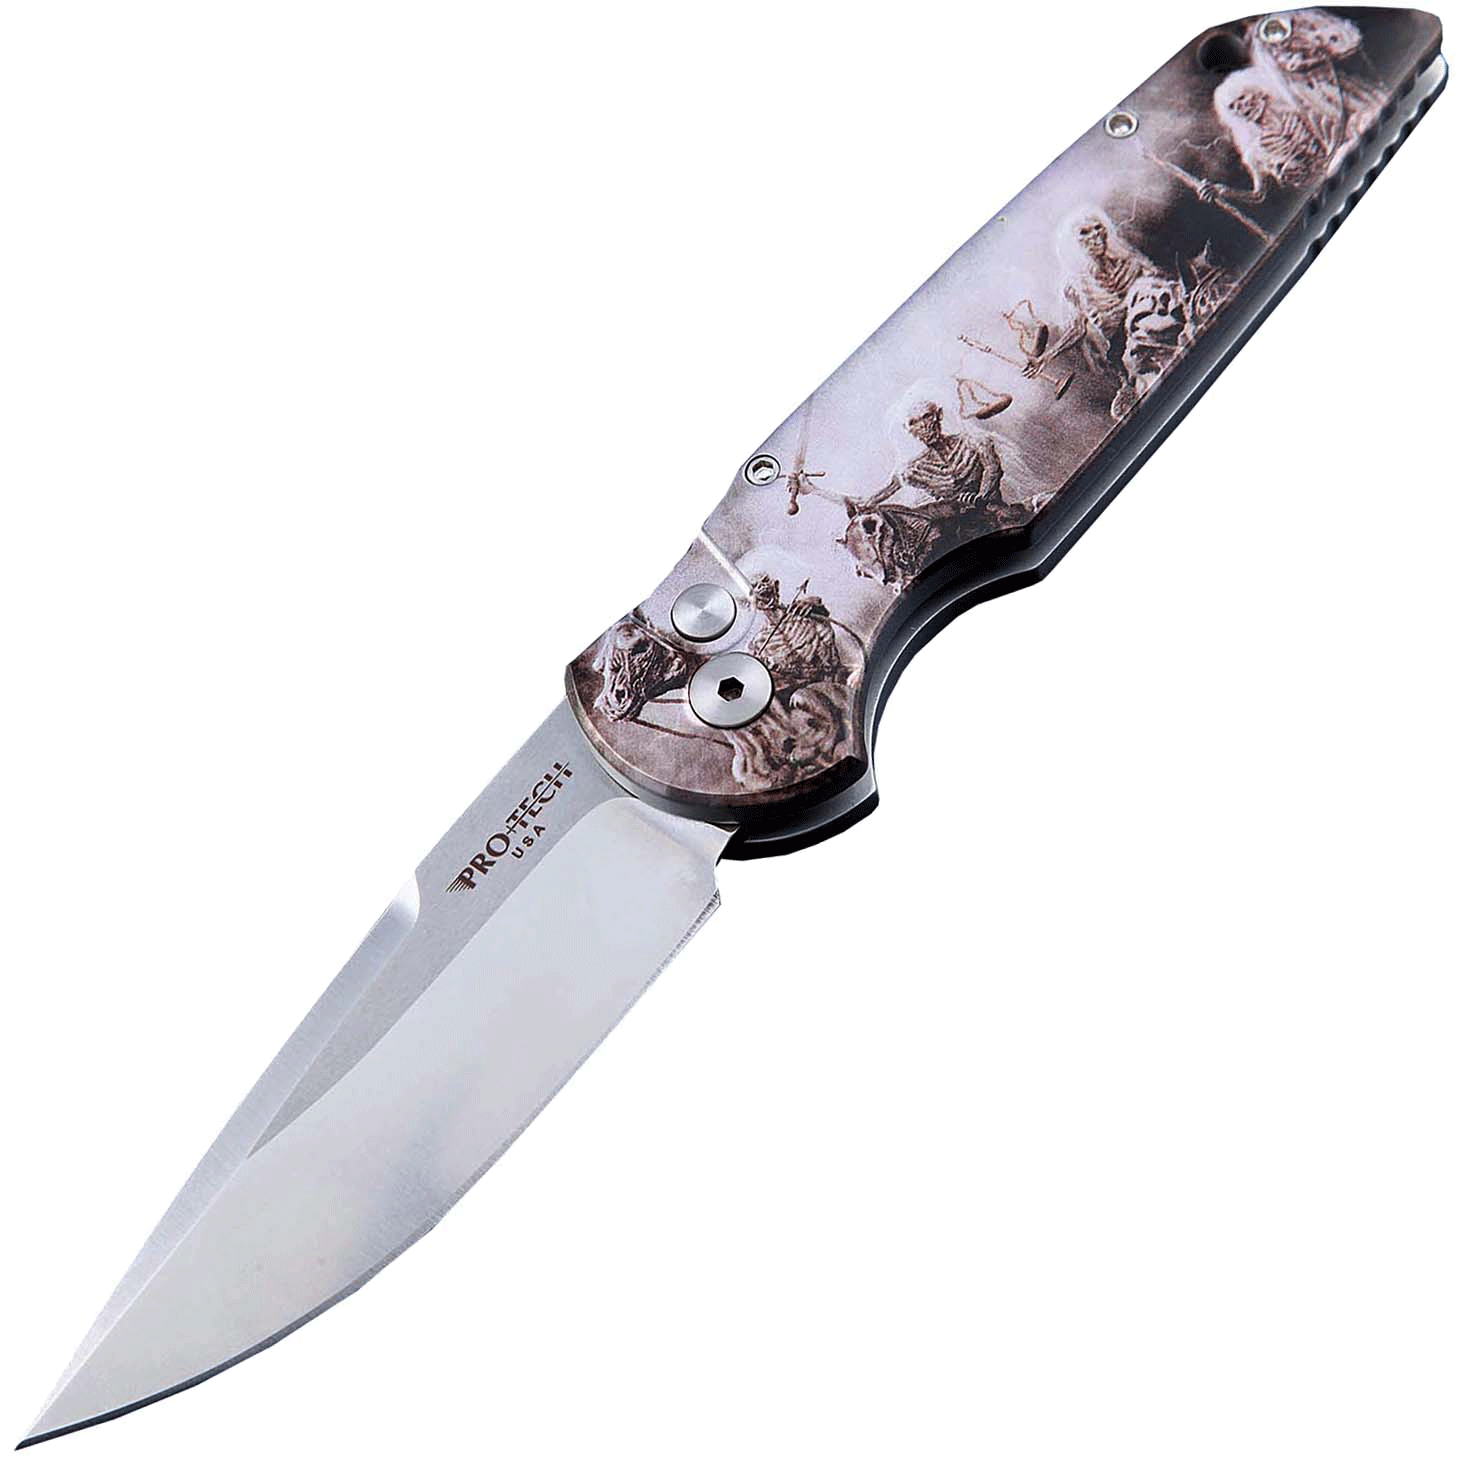 Автоматический складной нож Pro-Tech TR-3 Limited, клинок Stonewash, сталь 154CM, рукоять алюминий, рисунок скелеты пиратов